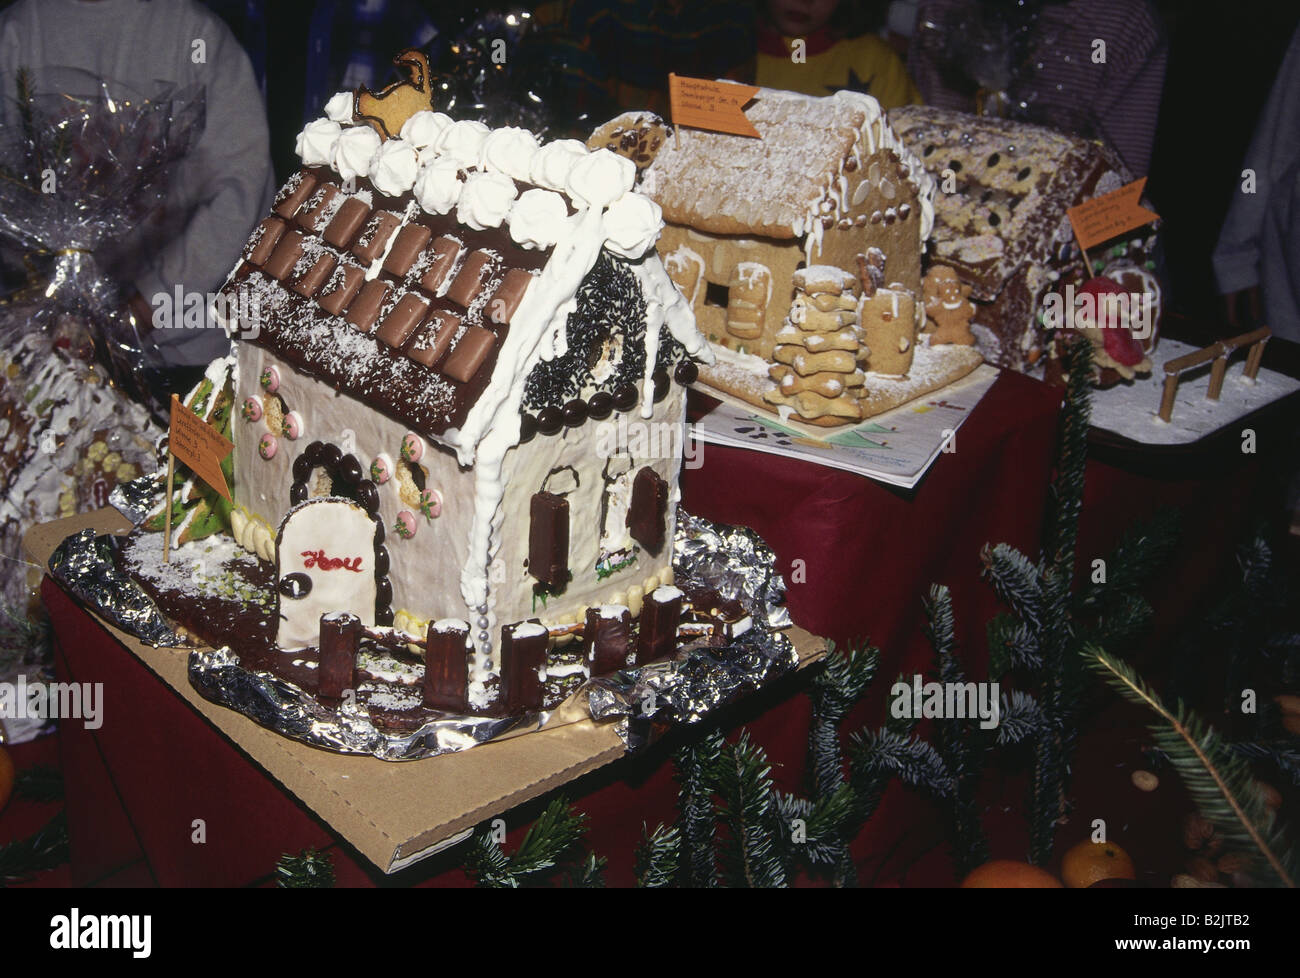 Noël, pâtisserie, maison de gâteau au poivre, concours de boulangerie, Munich, Allemagne, 8.12.1994, Banque D'Images